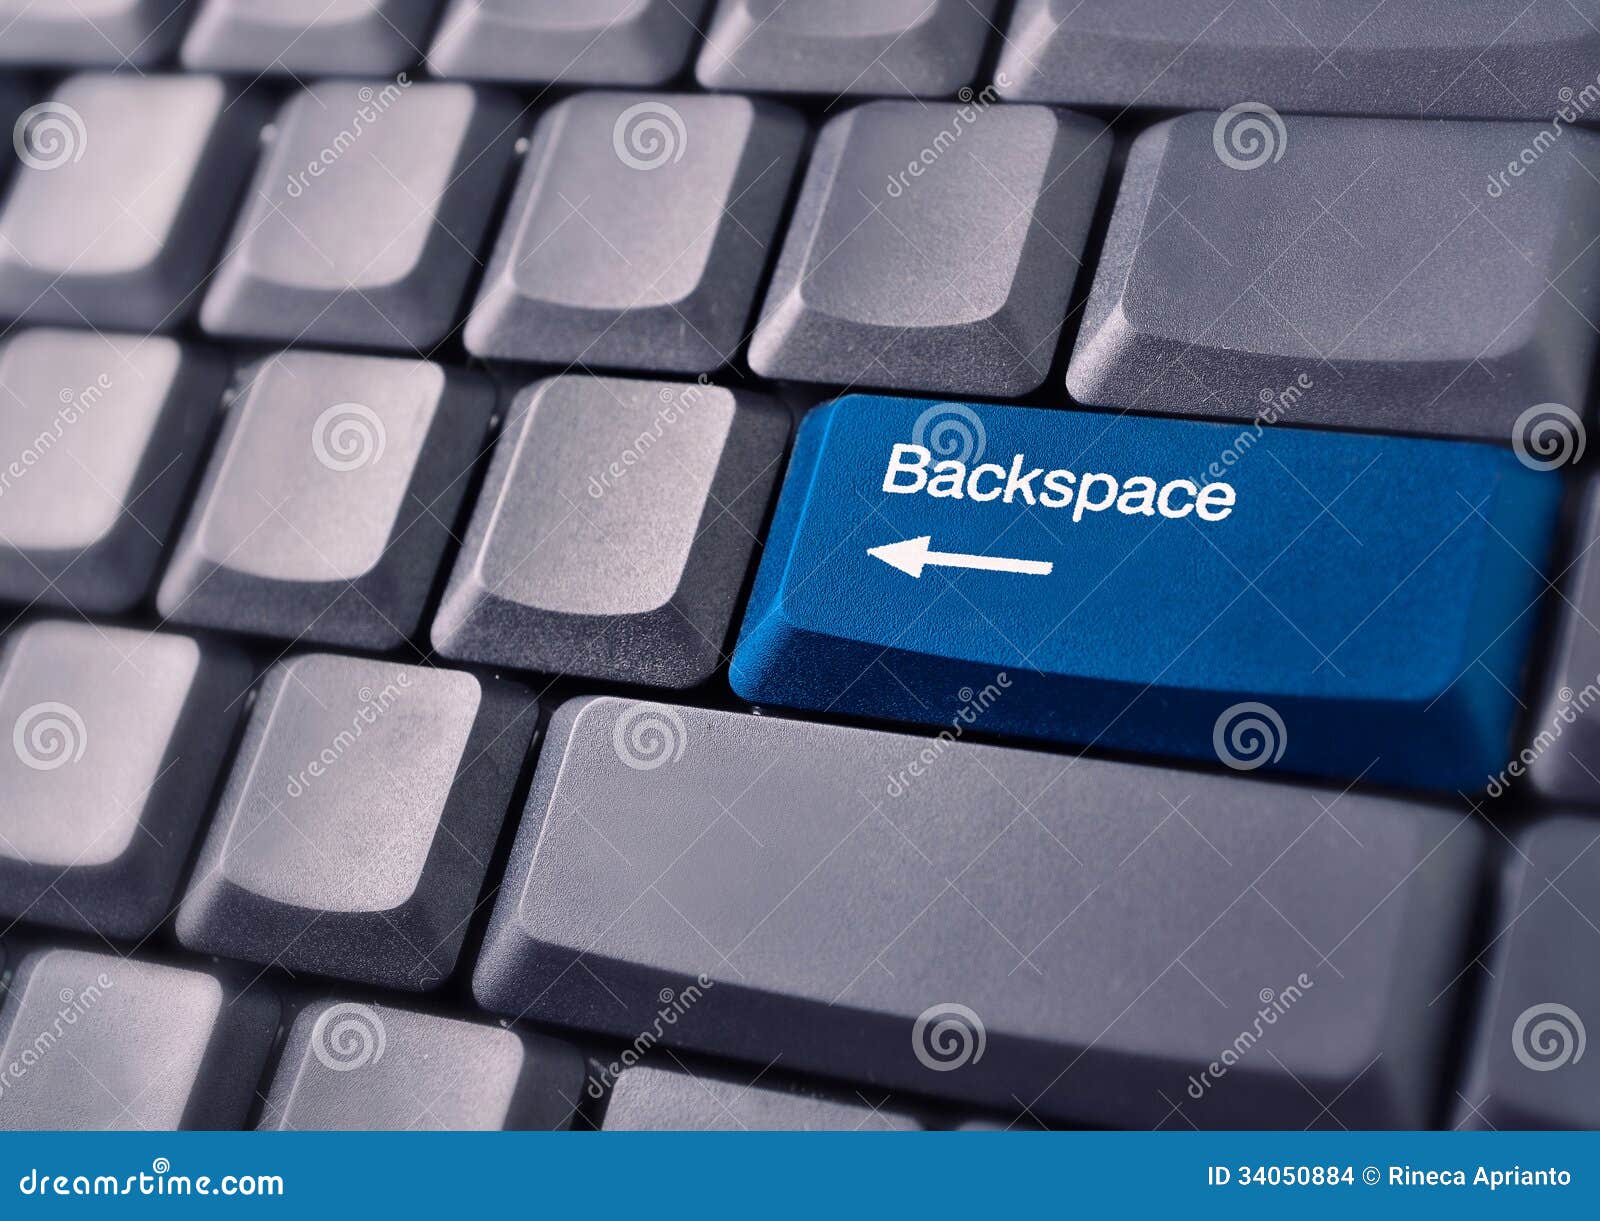 Shift backspace. Что такое Backspace на клавиатуре компьютера. Кнопка Backspace на клавиатуре. Что такое бэкспейс на клавиатуре компьютера. Клавиша бекспейс на клавиатуре.